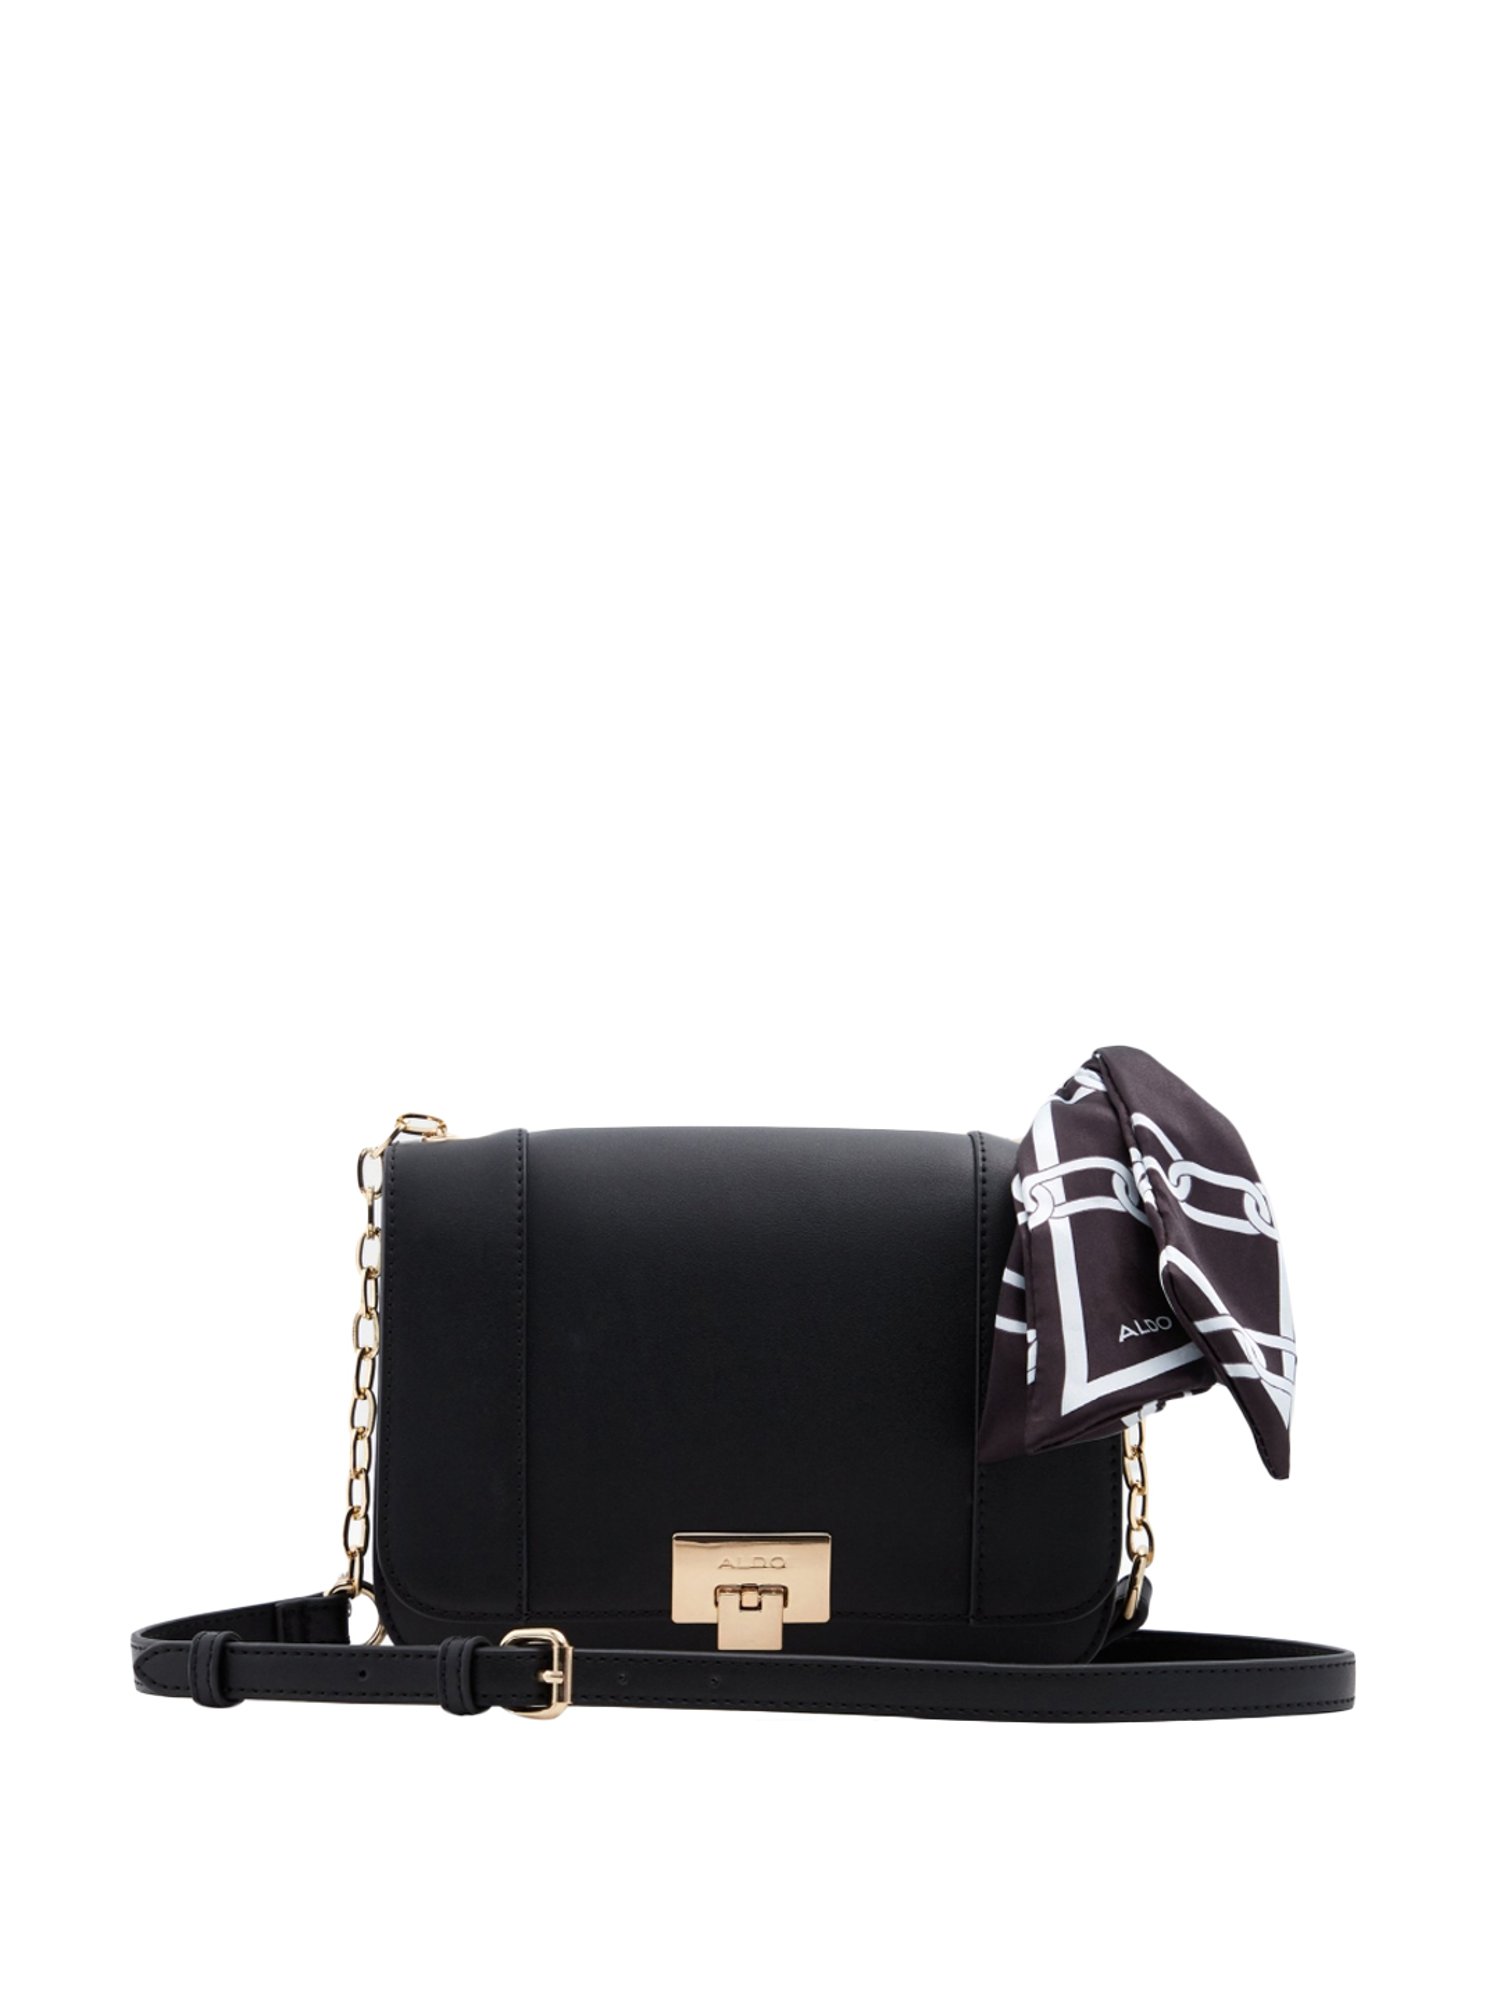 black aldo handbag